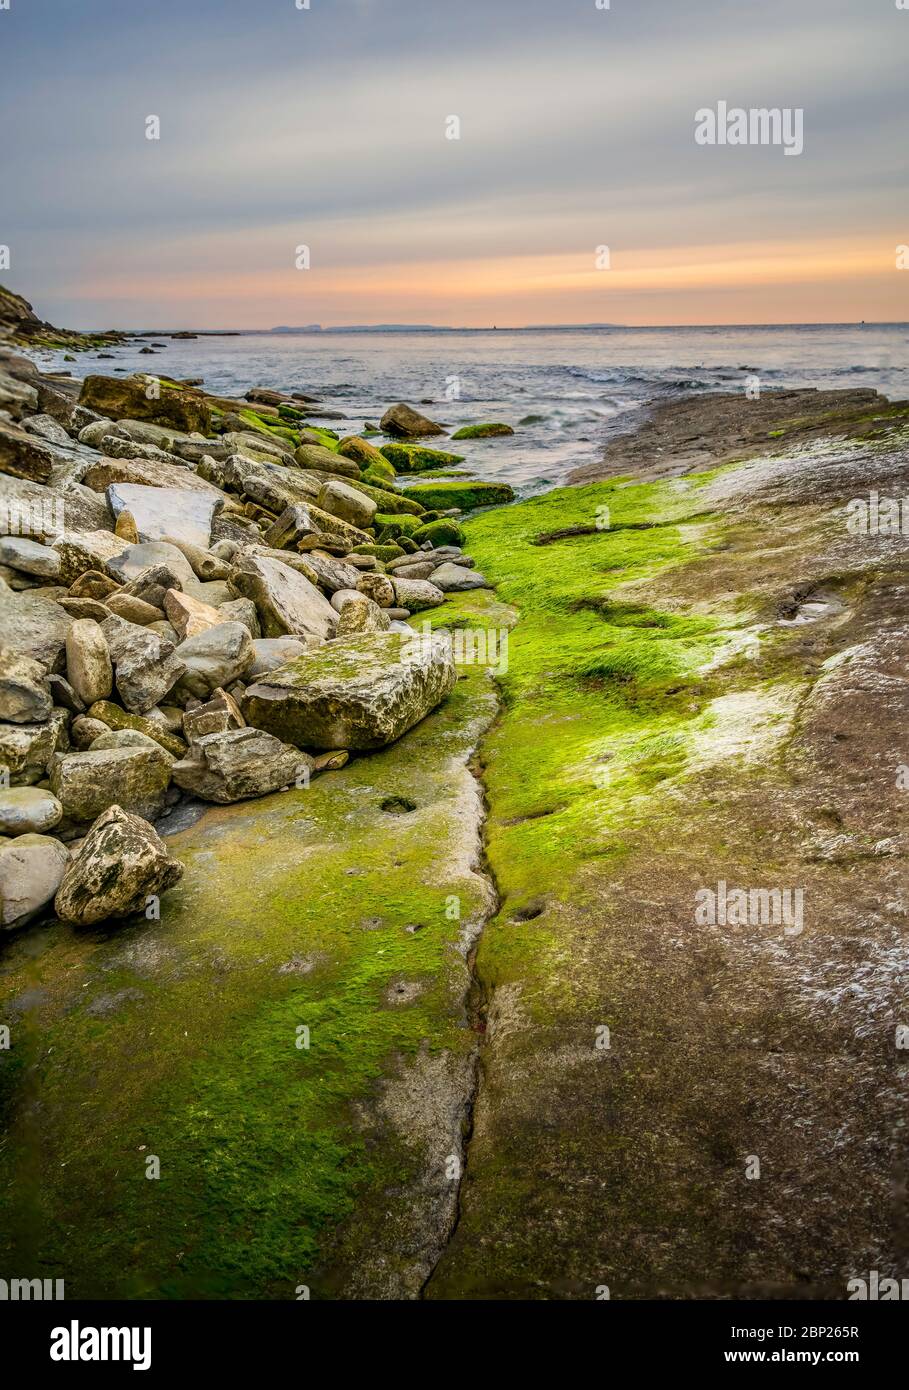 Flux d'écoulement comme la marée a disparu juste avec les algues et après le lever du soleil avec une lumière chaude orange lueur dans l'horizon. Baie de Durlston, Swanage, Dorset. Banque D'Images